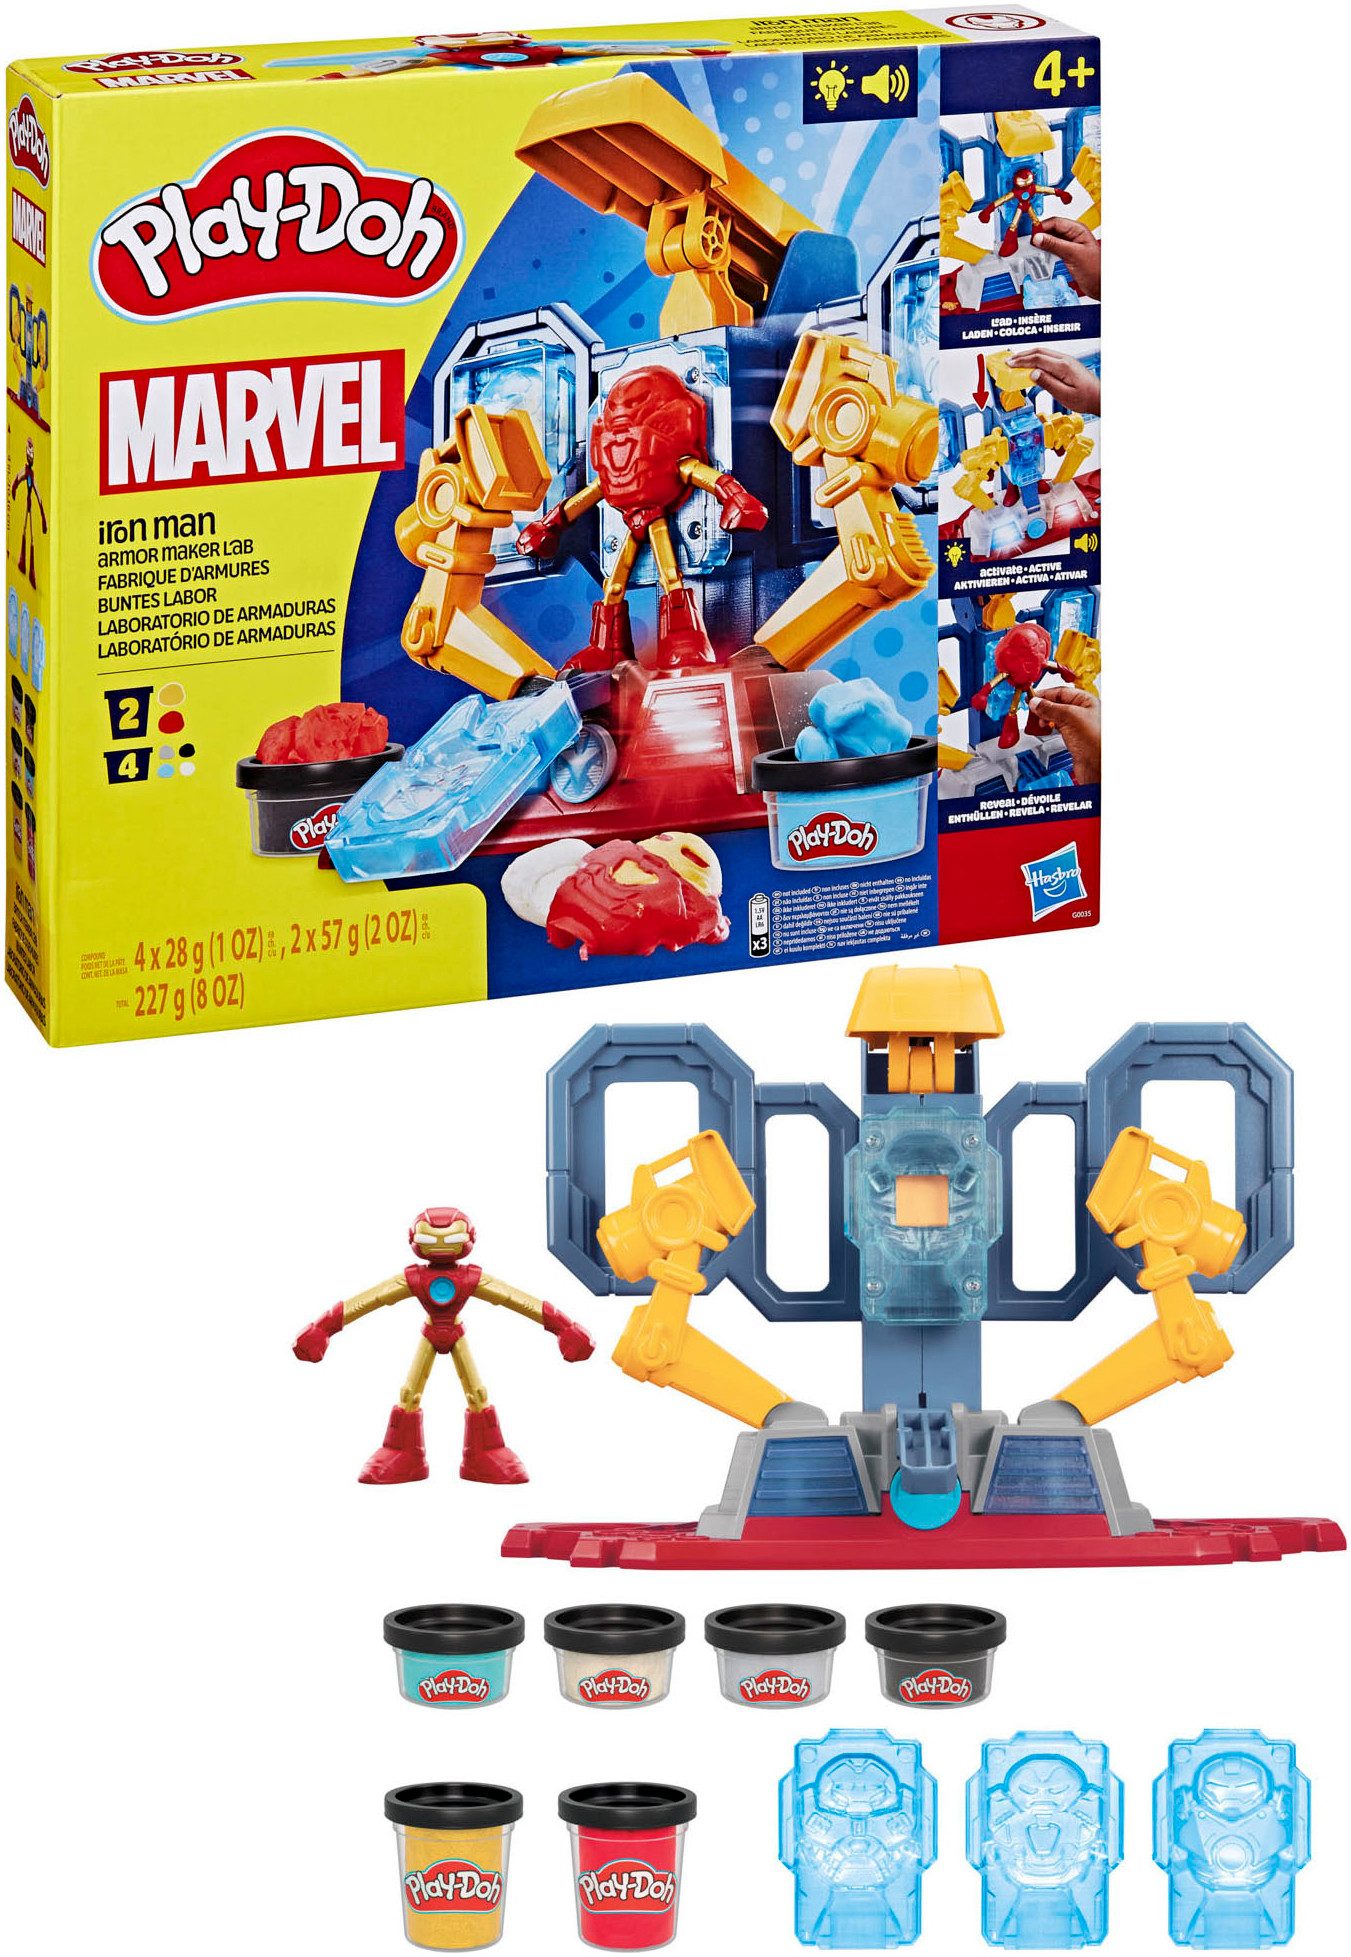 Hasbro Knete Play-Doh, Marvel Iron Man Buntes Labor, mit Licht und Sound